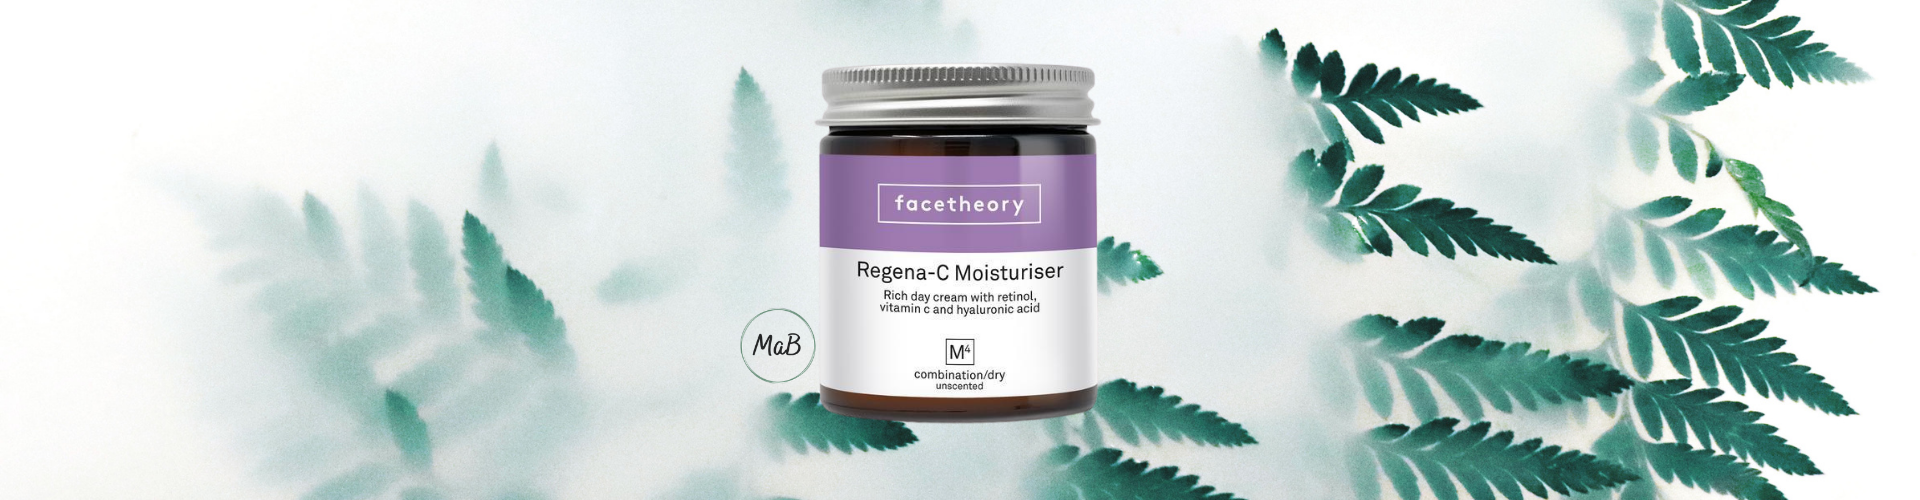 Facetheory moisturiser review - a photograph of a jar of regent-c M4 moisturiser over a natural background.